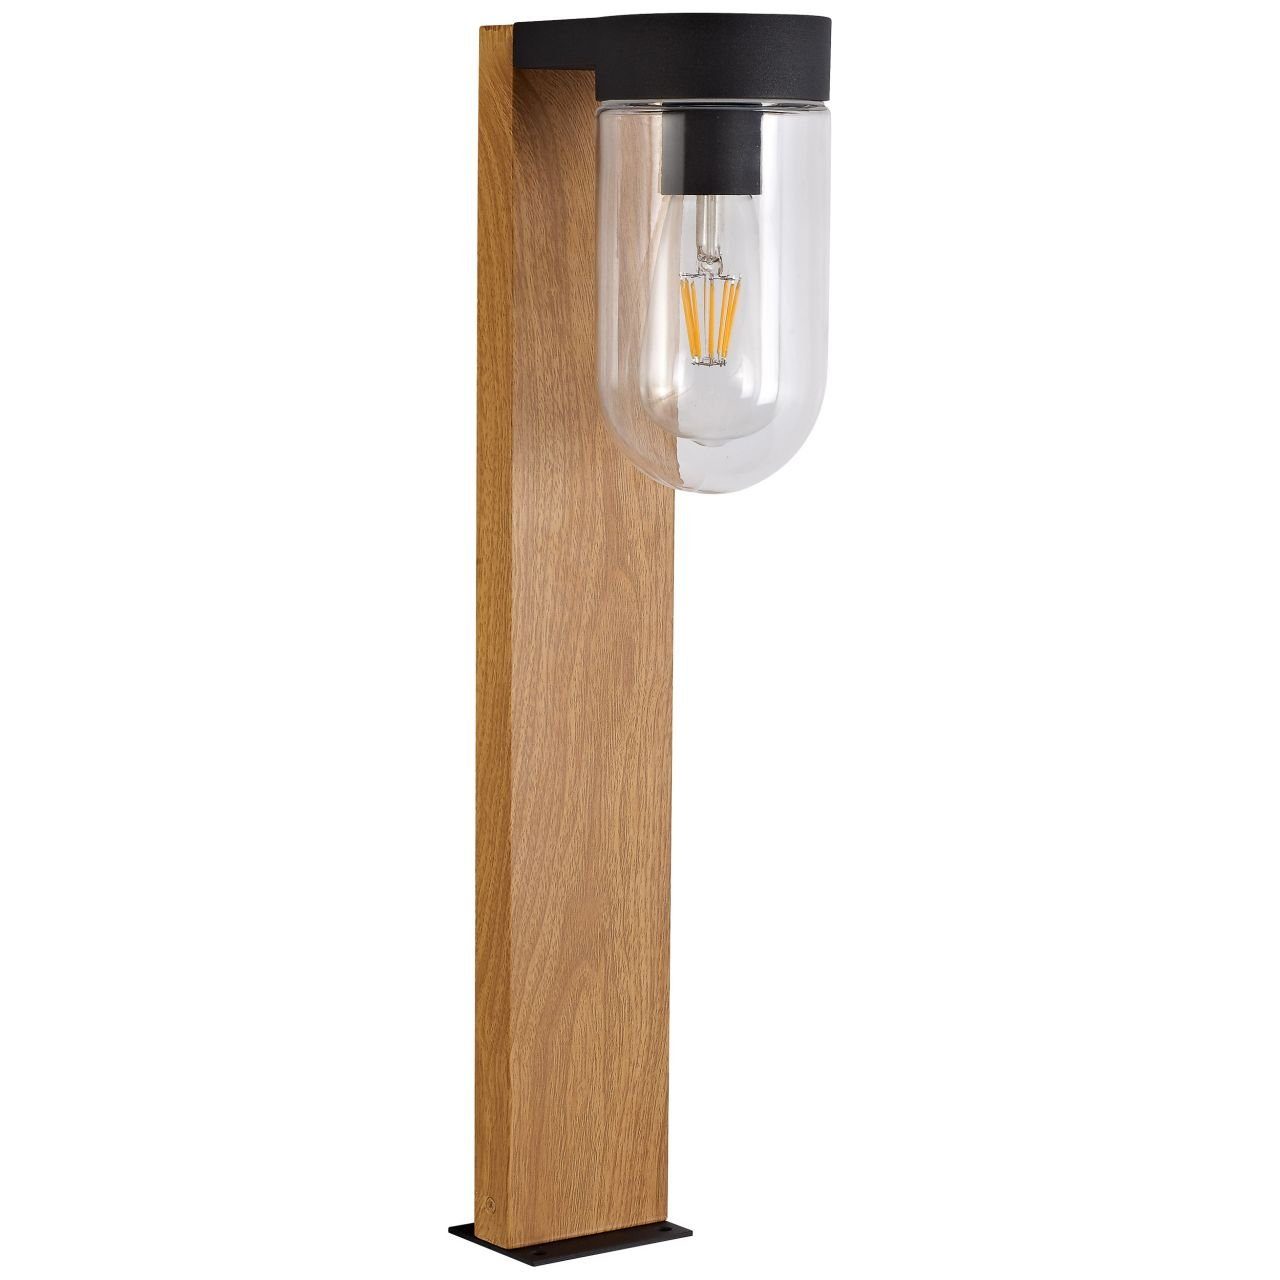 Brilliant Außen-Stehlampe Cabar, Lampe holz 1x 55cm Cabar dunkel/schwarz Außensockelleuchte A60, E27